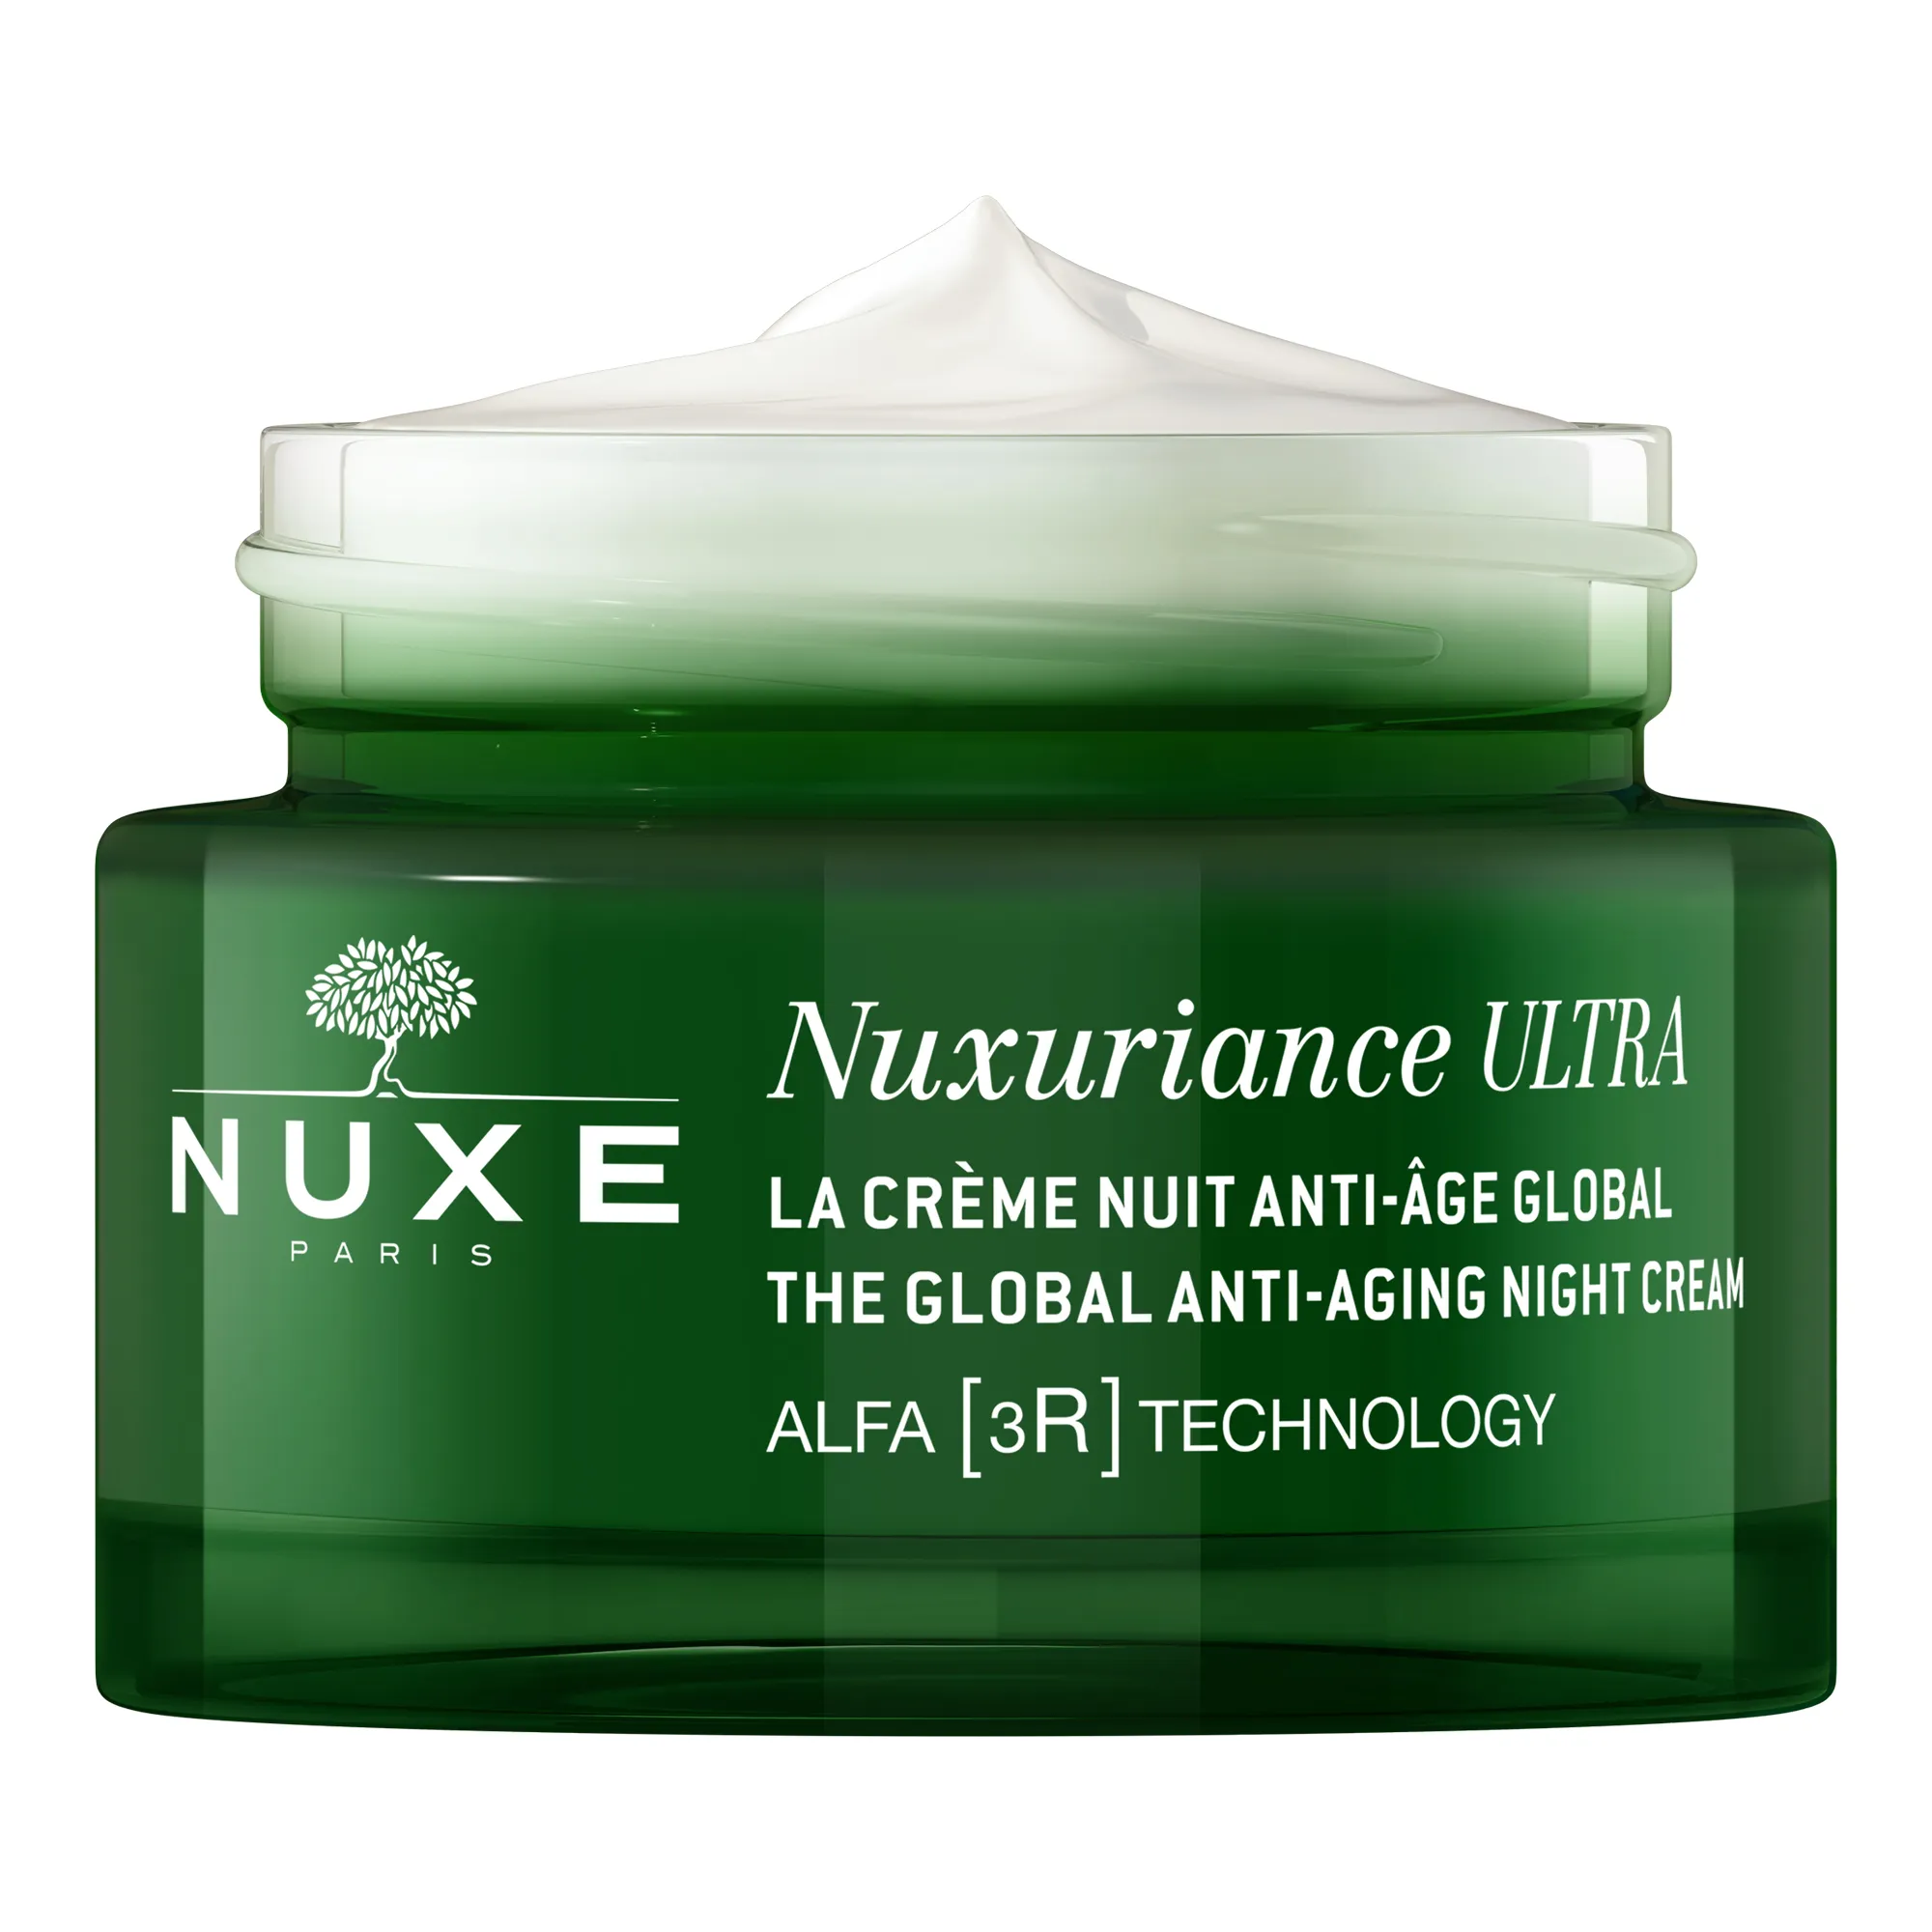 NUXE Nuxariance Ultra krem do twarzy przeciwstarzeniowy na noc, 50 ml 